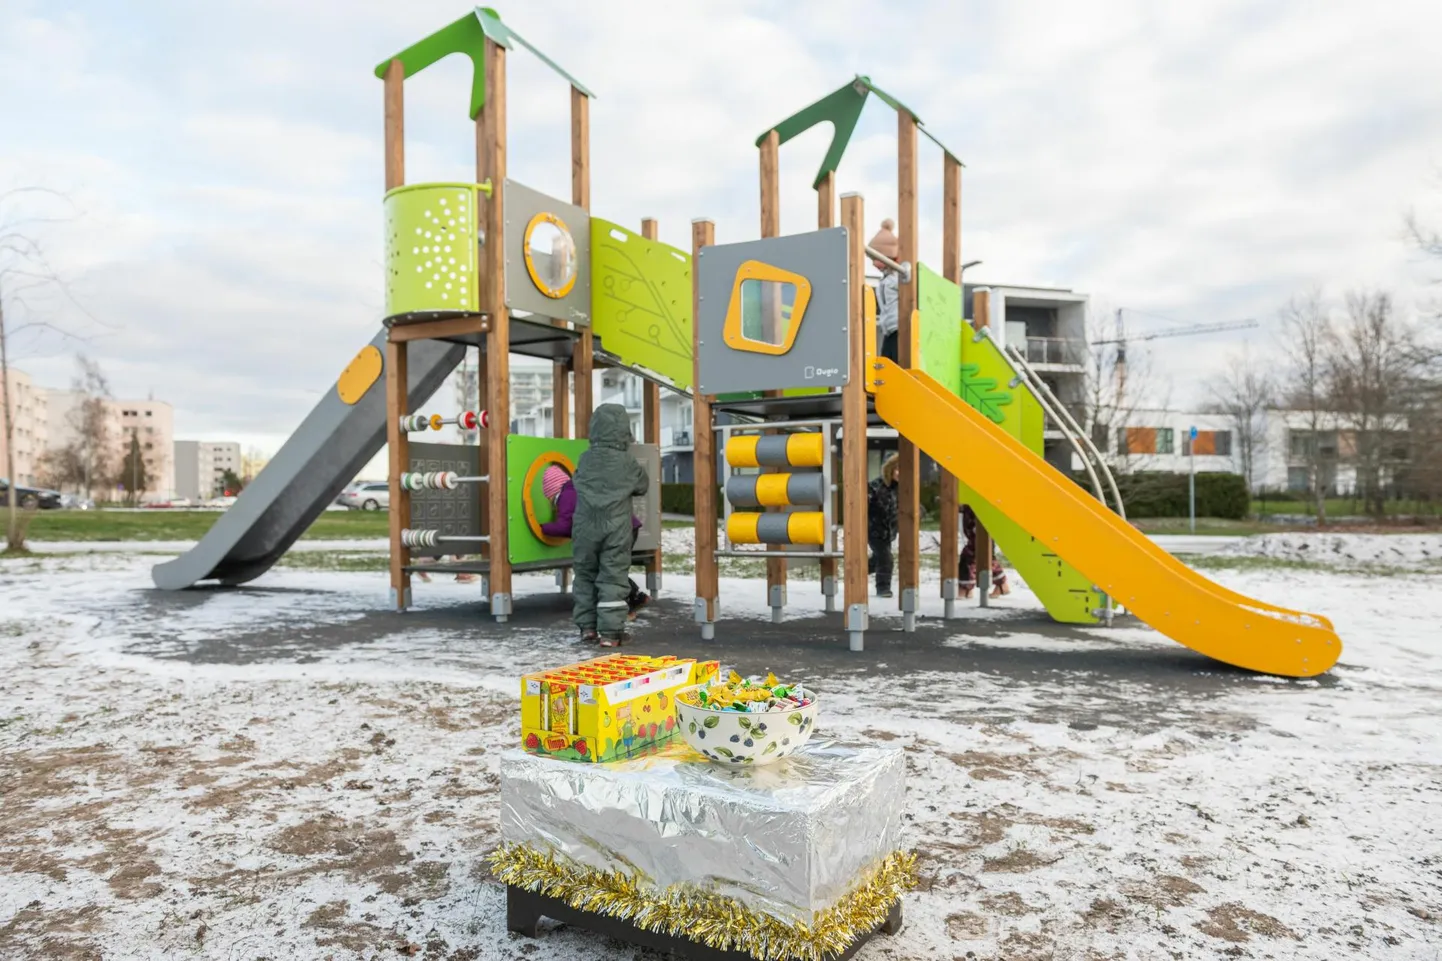 Novembris avati Pärnus Papiniidu tänava otsas ranna kergliiklustee ääres uus laste mänguväljak.